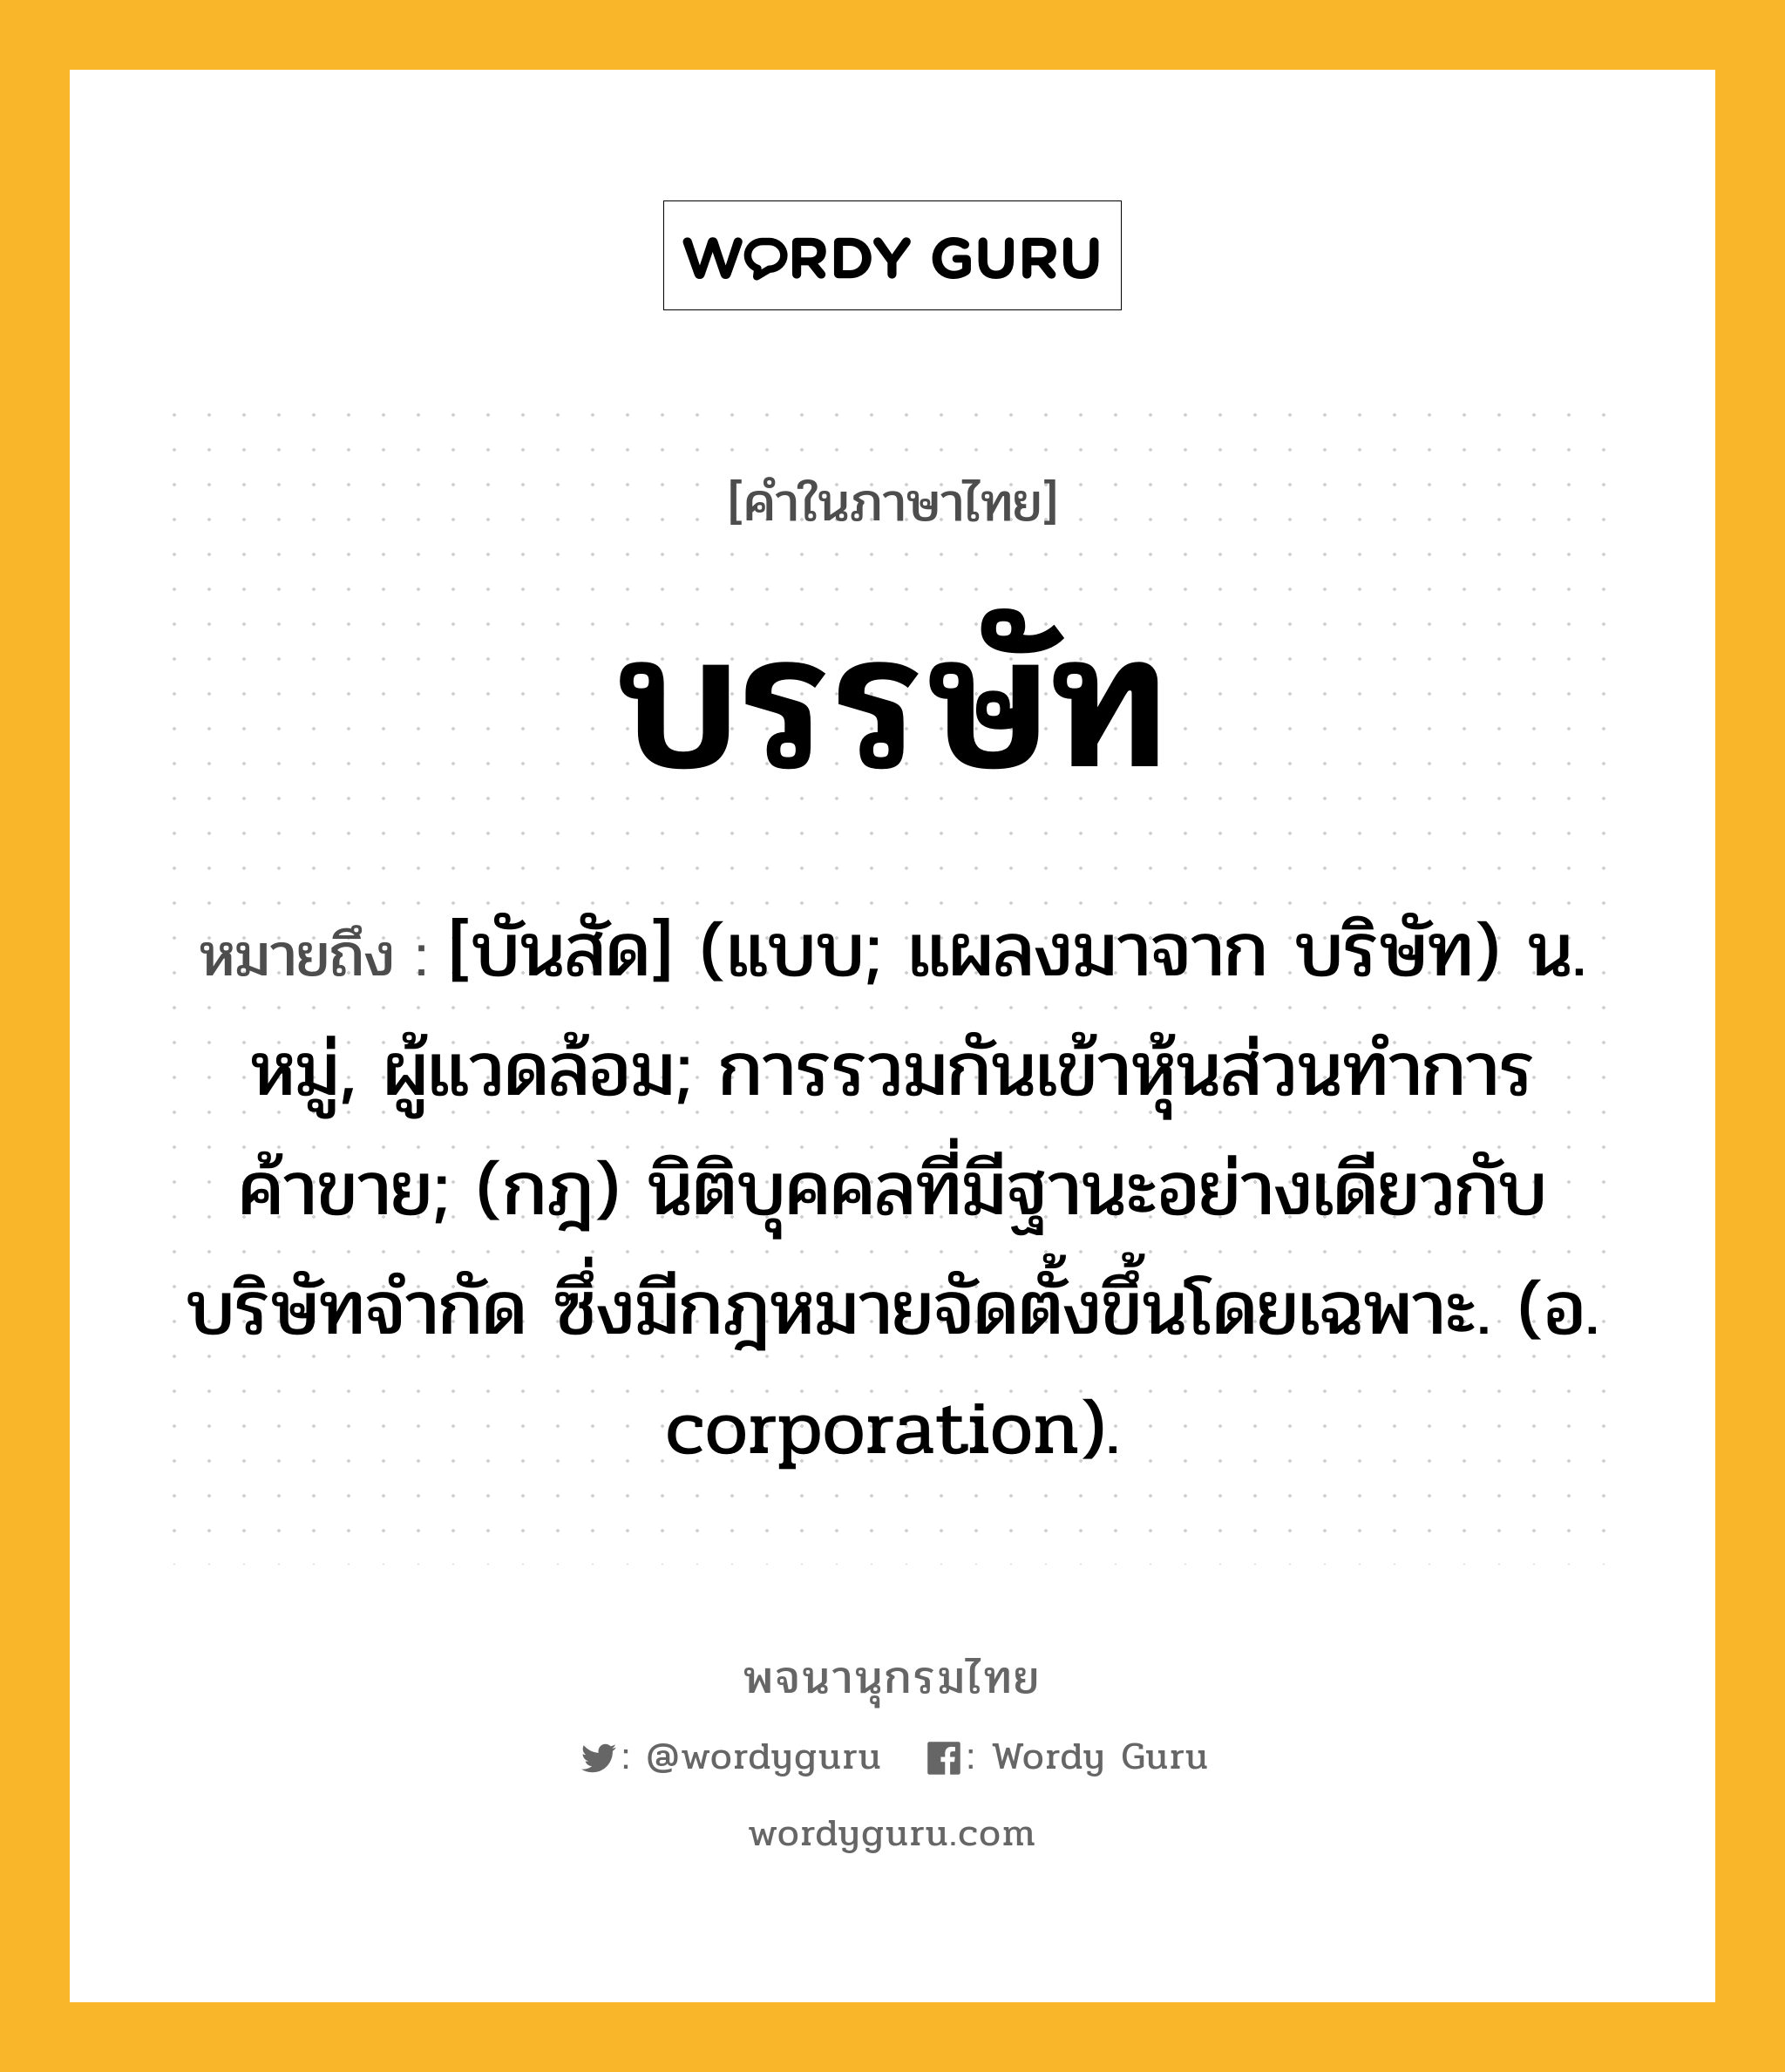 บรรษัท ความหมาย หมายถึงอะไร?, คำในภาษาไทย บรรษัท หมายถึง [บันสัด] (แบบ; แผลงมาจาก บริษัท) น. หมู่, ผู้แวดล้อม; การรวมกันเข้าหุ้นส่วนทําการค้าขาย; (กฎ) นิติบุคคลที่มีฐานะอย่างเดียวกับบริษัทจํากัด ซึ่งมีกฎหมายจัดตั้งขึ้นโดยเฉพาะ. (อ. corporation).